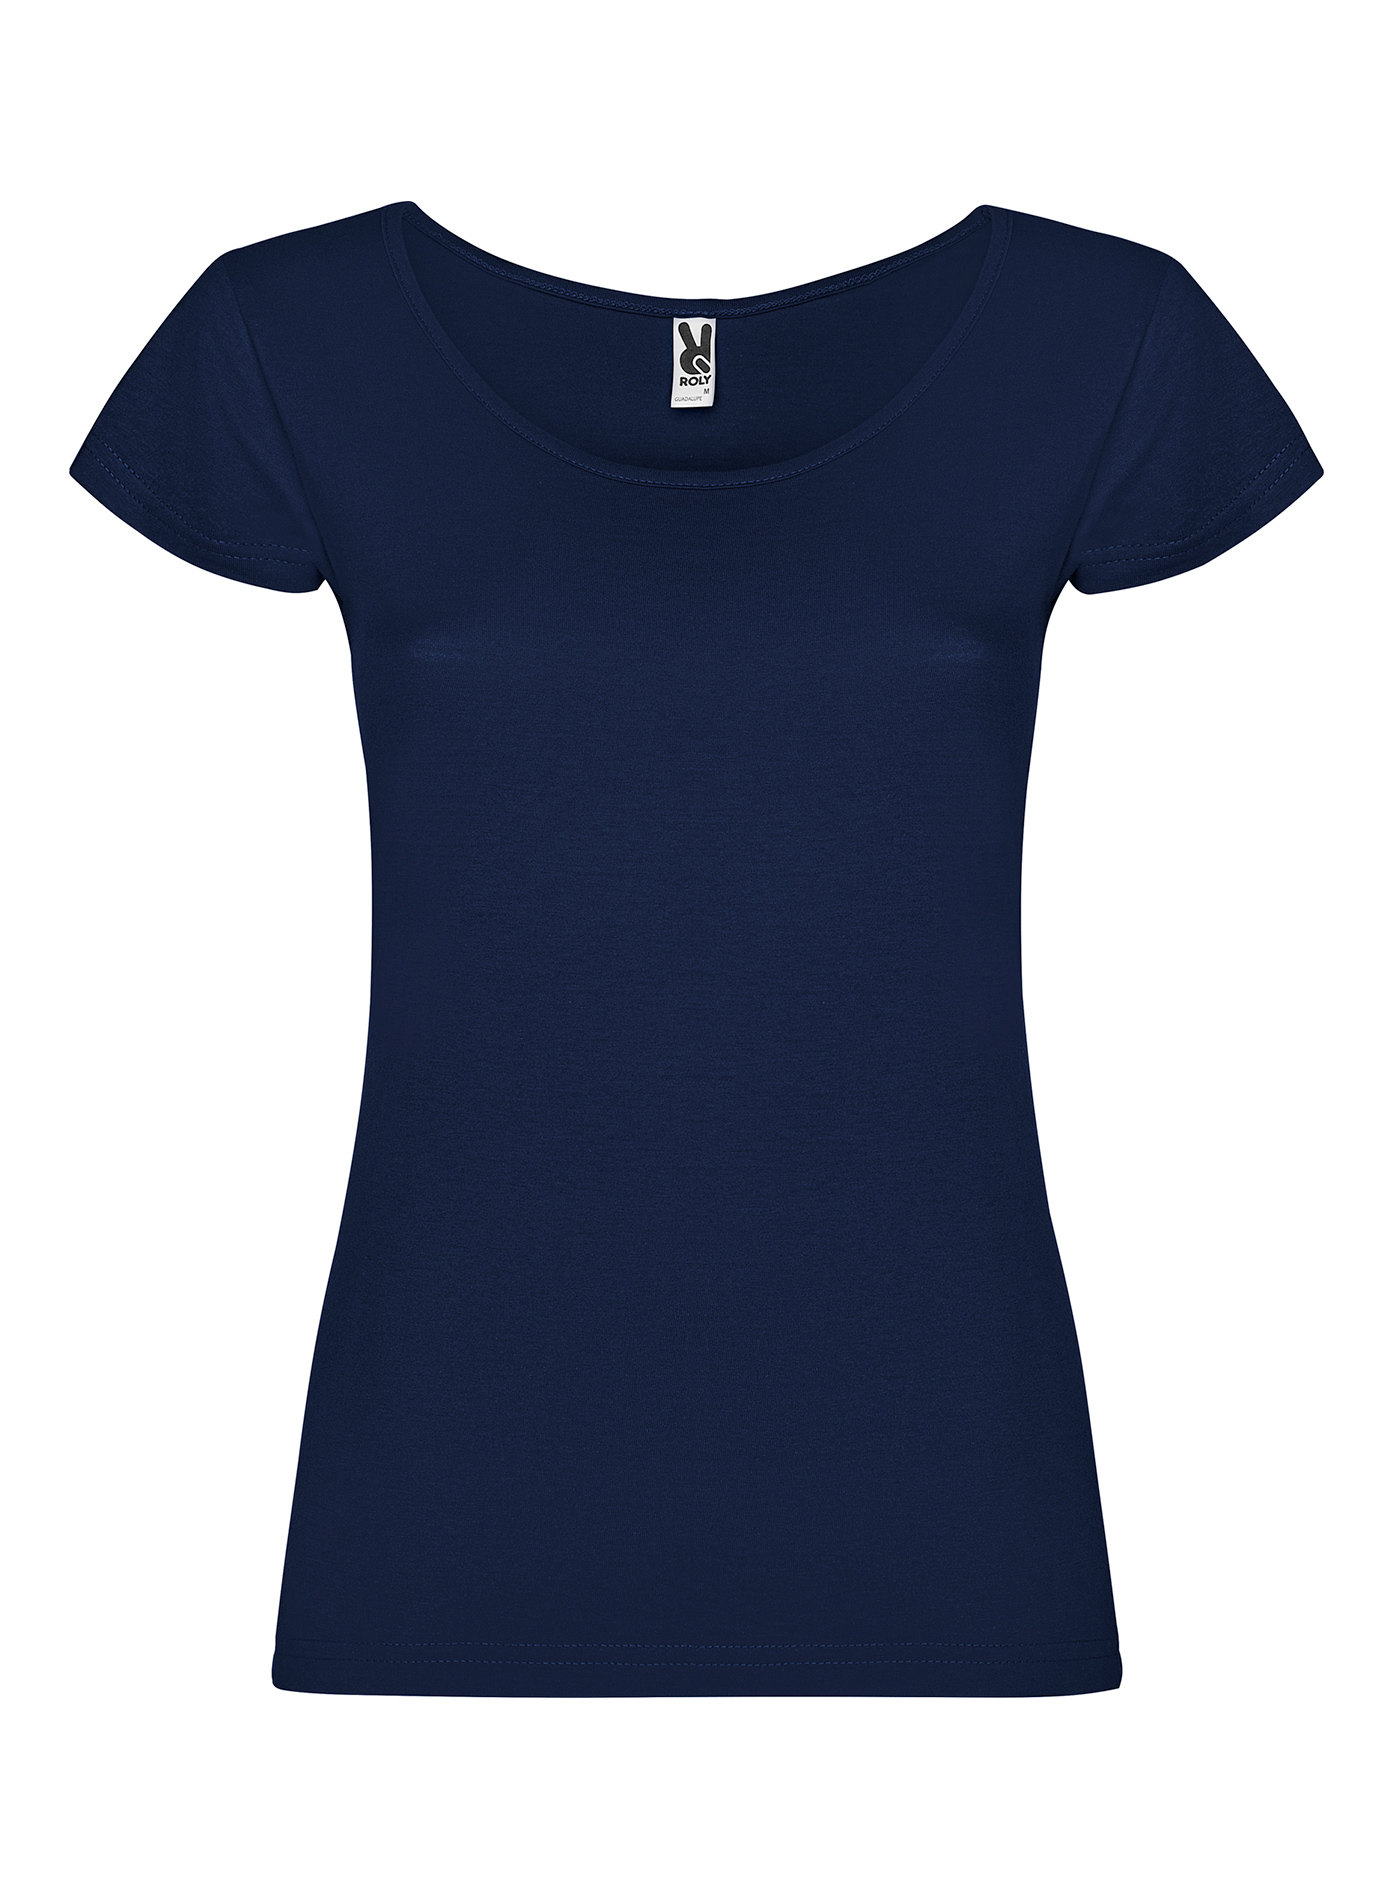 Dámské tričko Roly Guadalupe - Námořnická modrá L